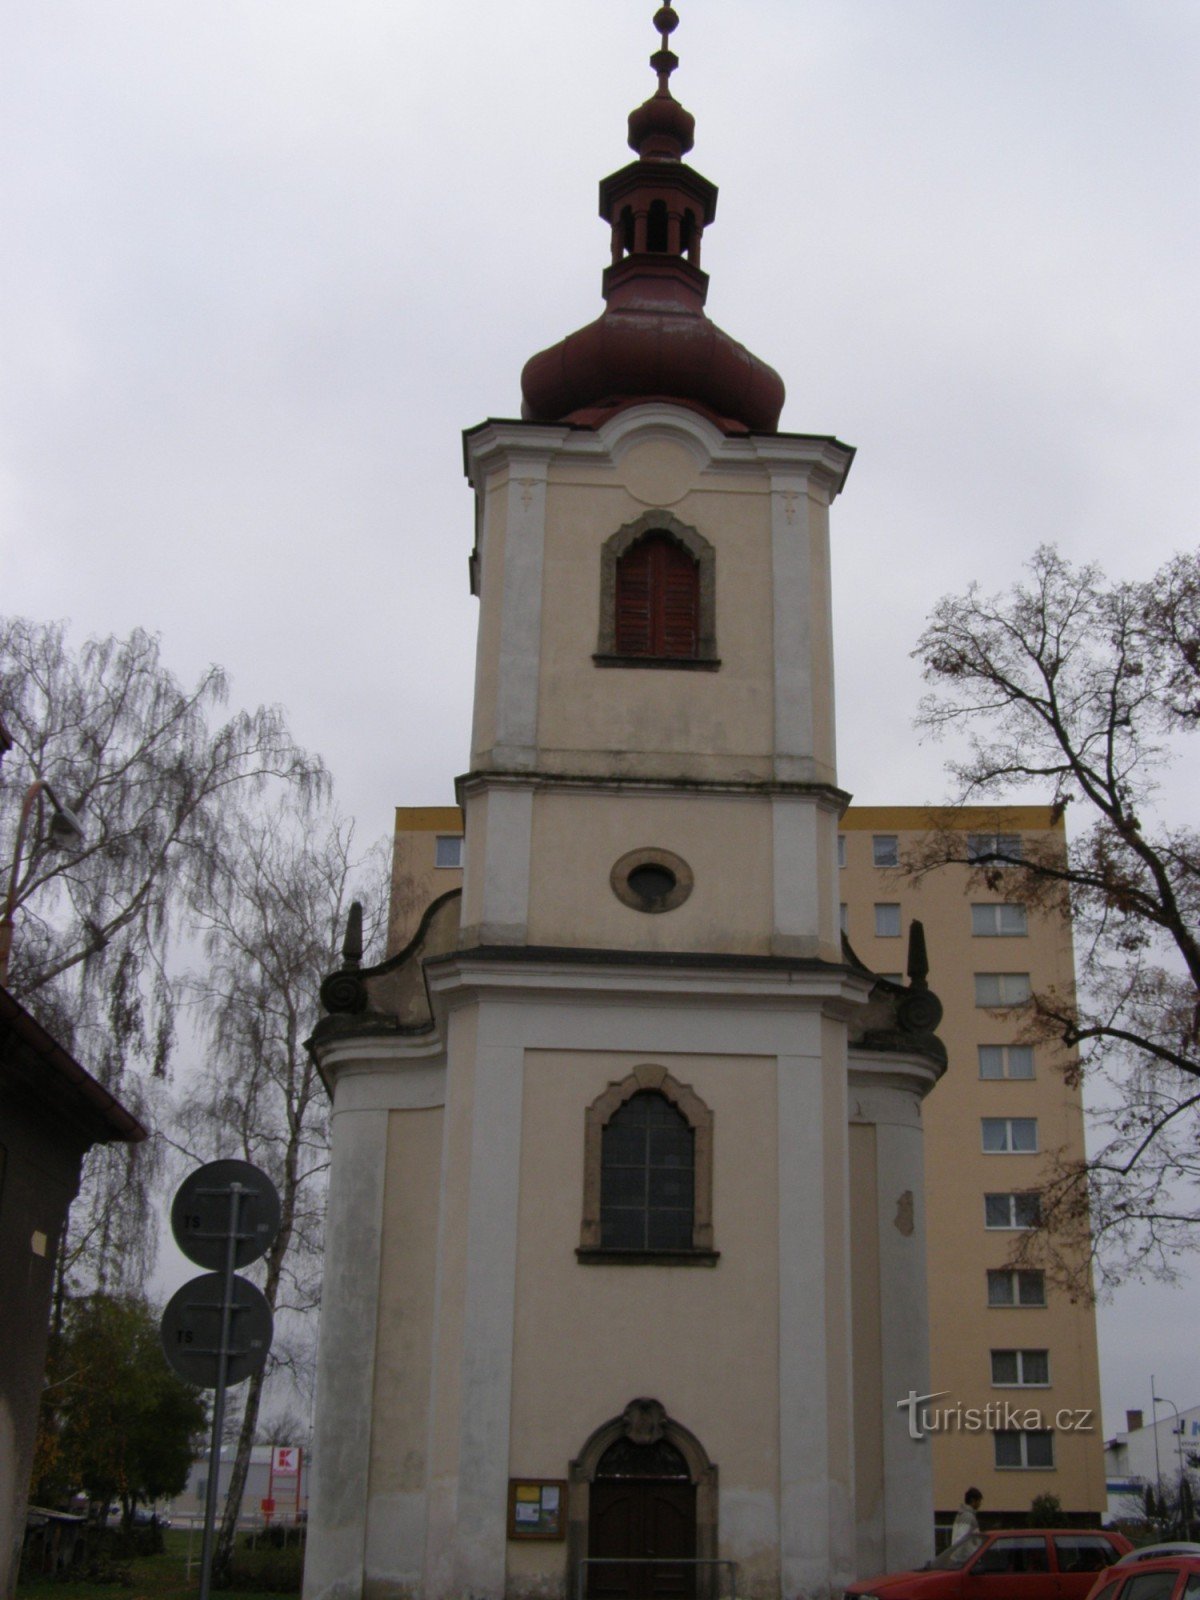 Dvur Králové - Szent István Felmagasztalásának temploma. Válság